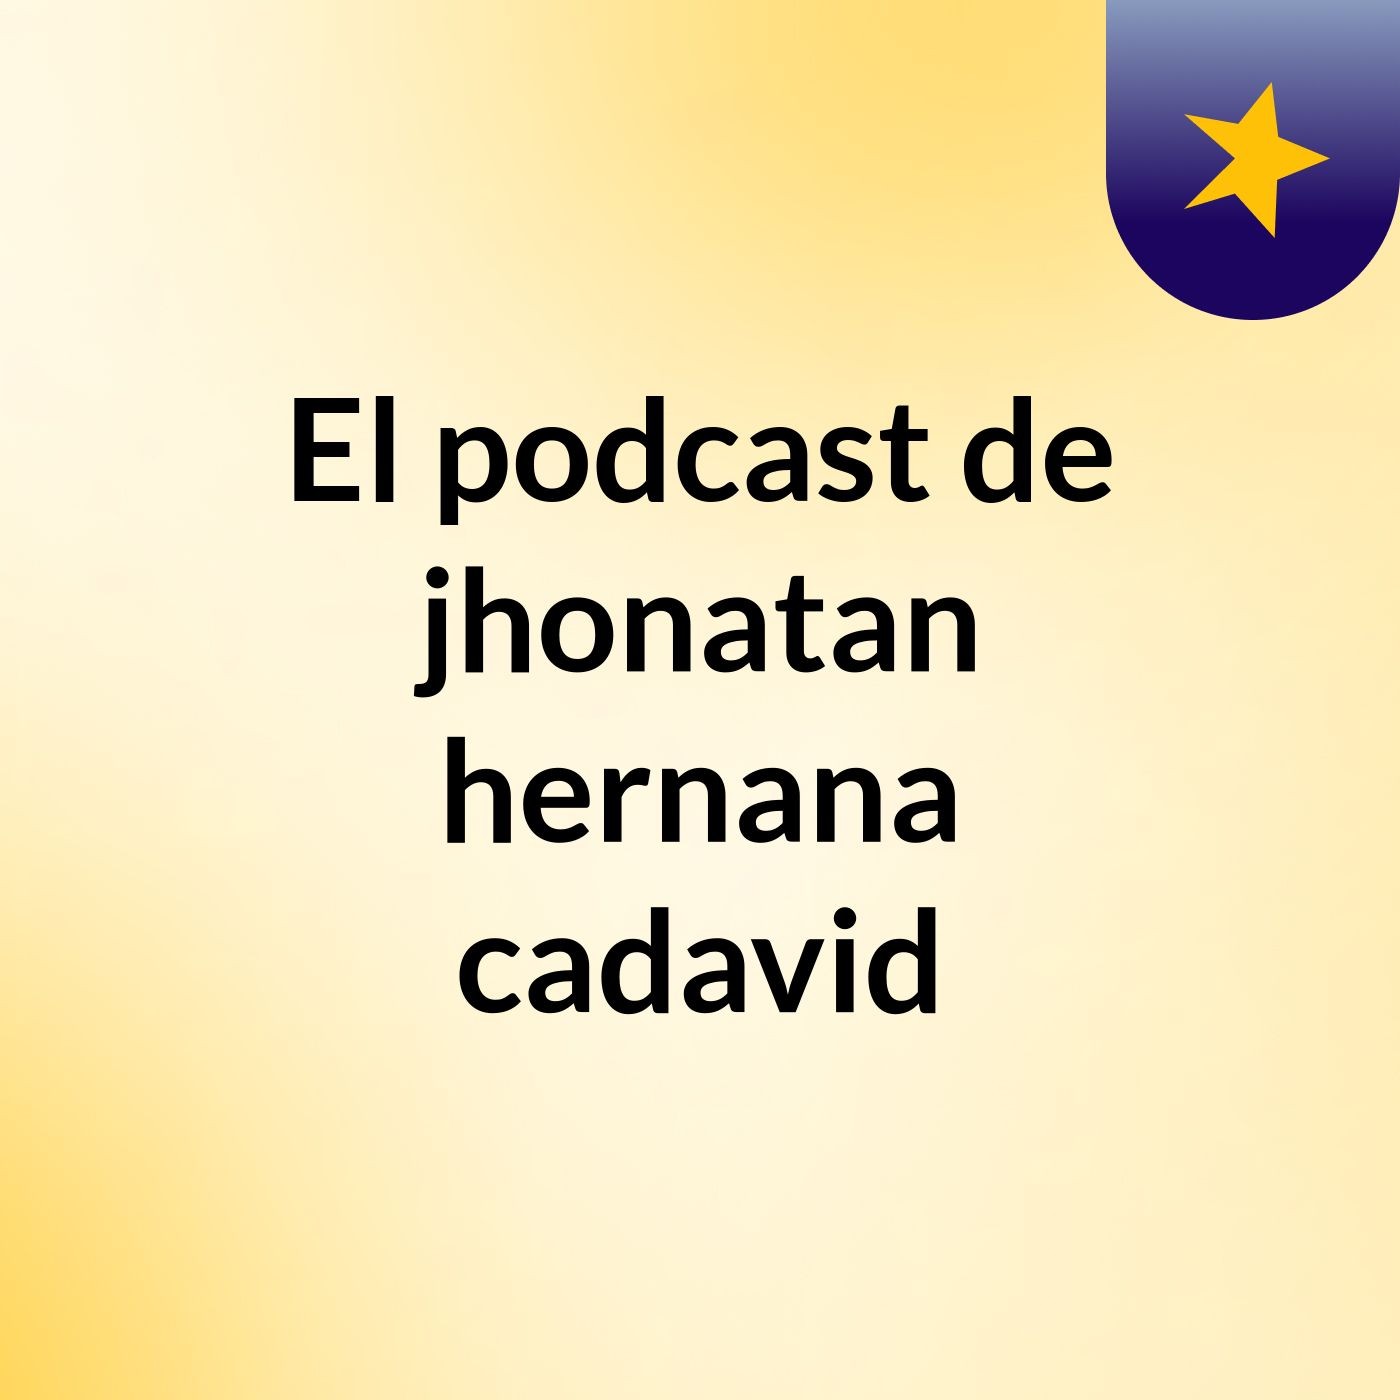 El podcast de jhonatan hernana cadavid